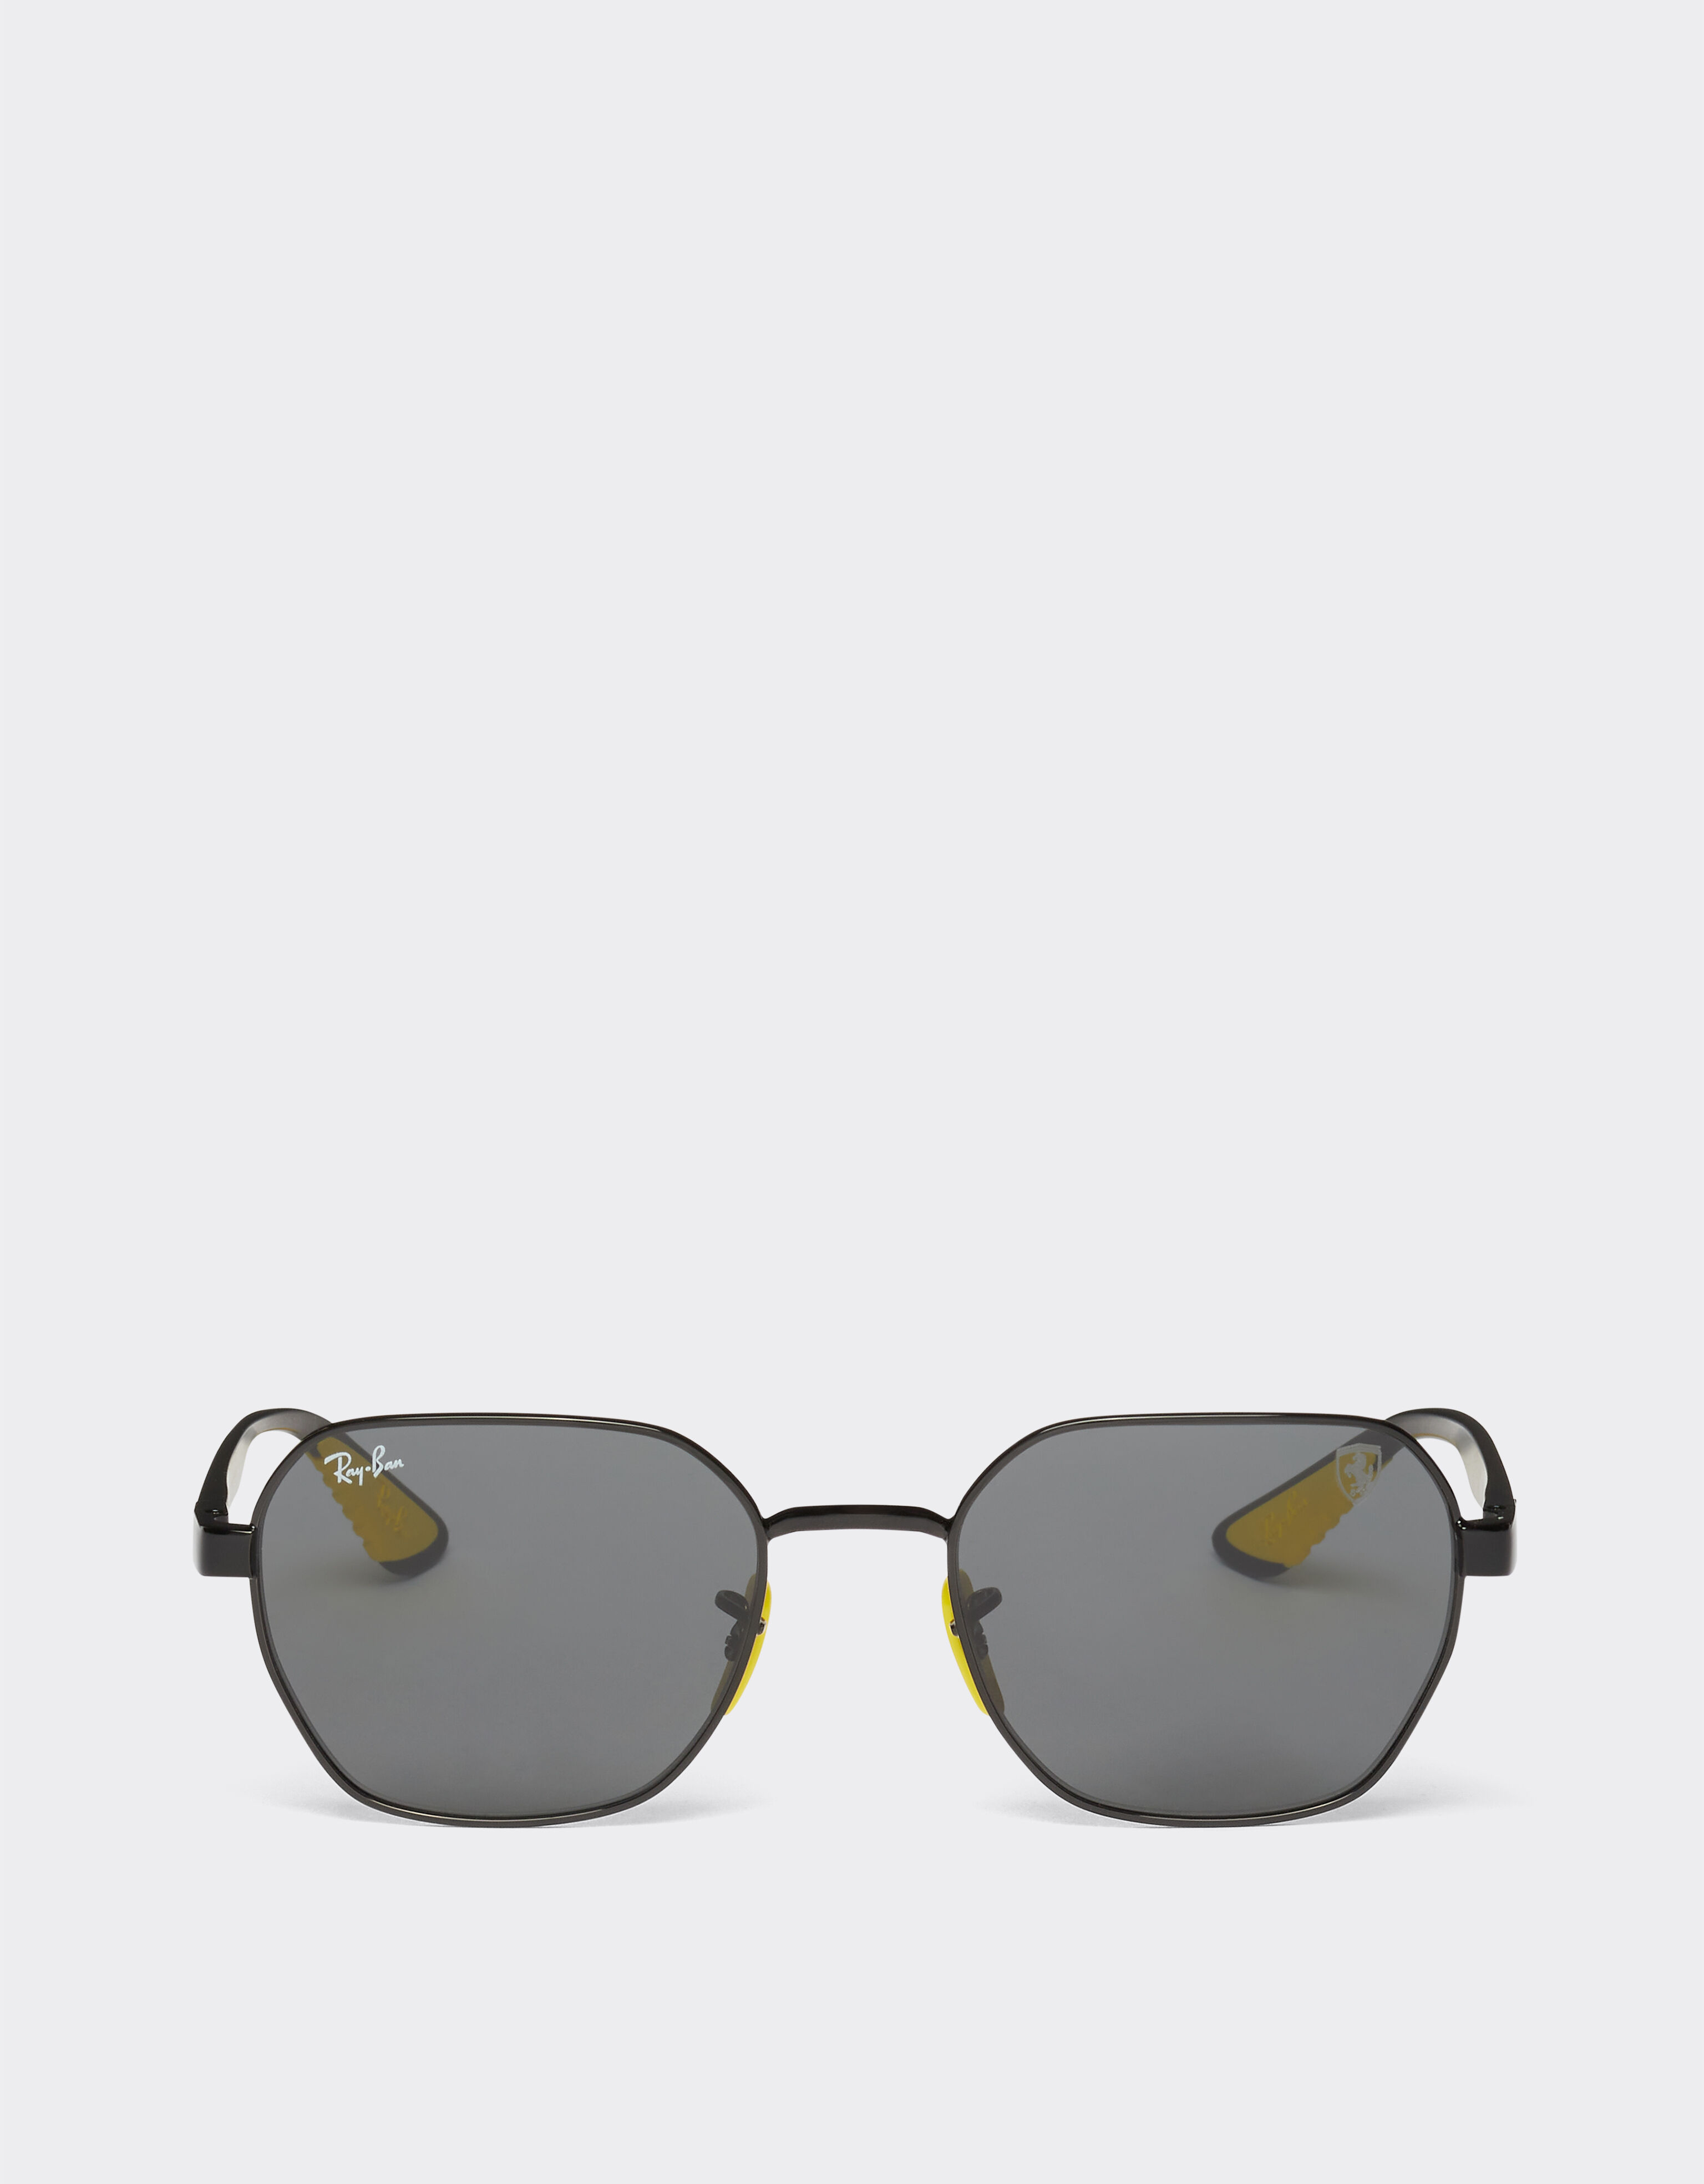 Ferrari Ray-Ban for Scuderia Ferrari 0RB3794M black metal sunglasses with grey lenses Rosso Corsa F1135f